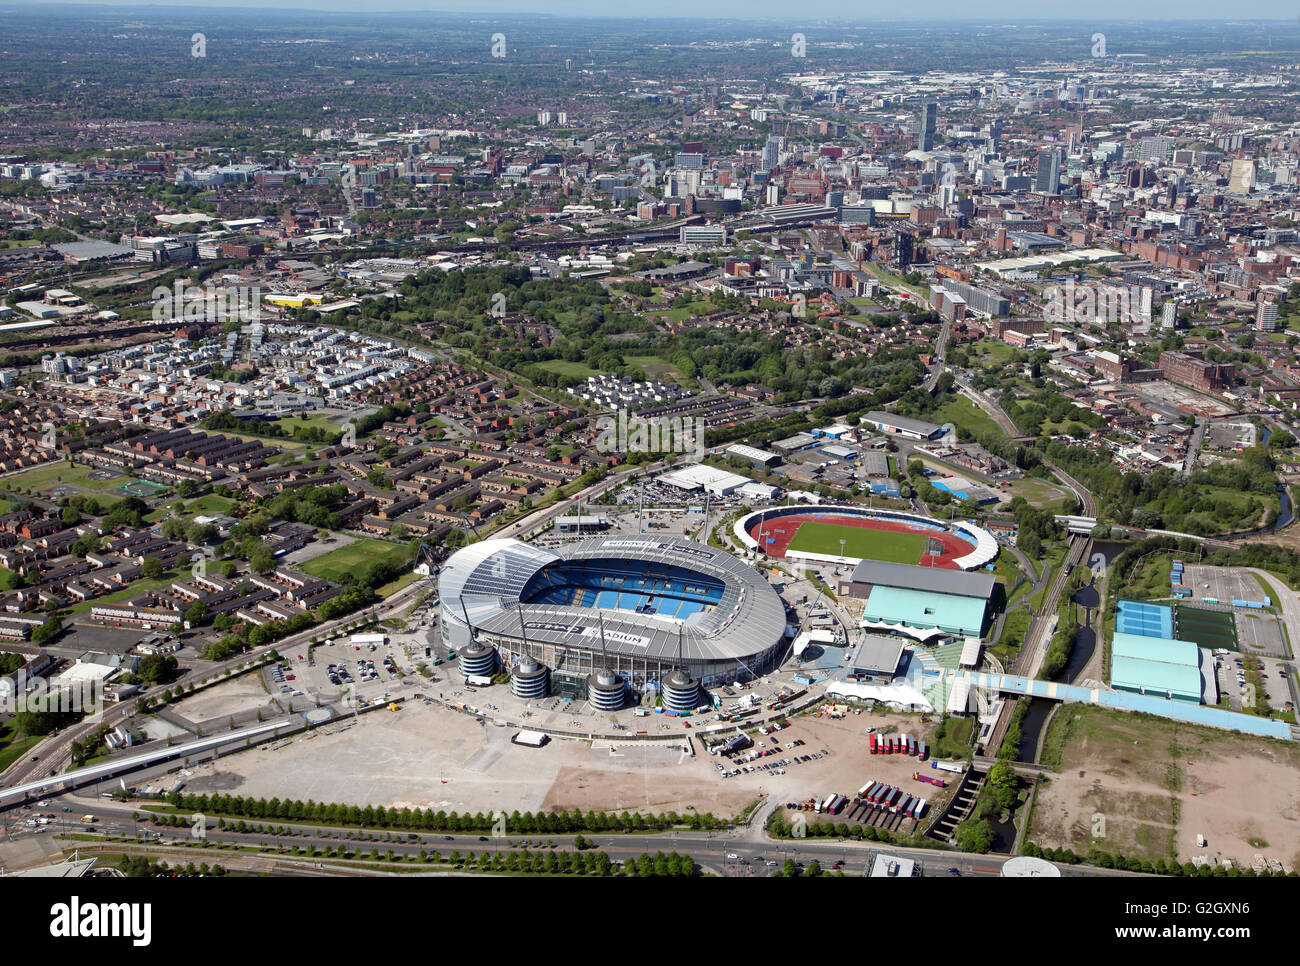 Vista aérea de la Academia de Fútbol de la ciudad de Manchester, el Etihad Stadium & Centro Regional de Manchester, Reino Unido Foto de stock